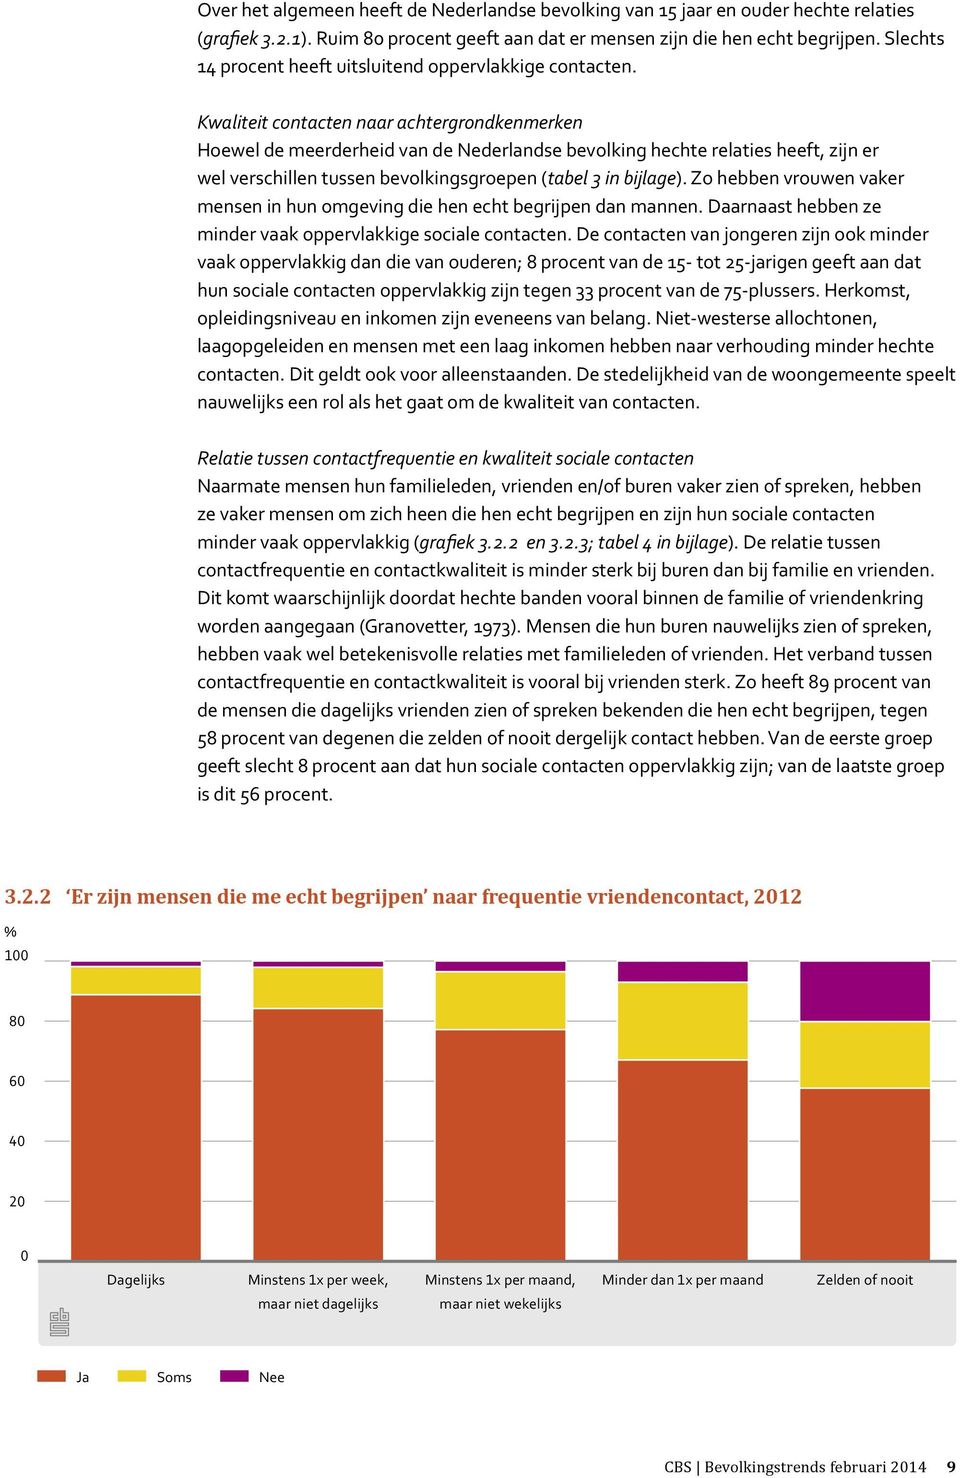 Kwaliteit contacten naar achtergrondkenmerken Hoewel de meerderheid van de Nederlandse bevolking hechte relaties heeft, zijn er wel verschillen tussen bevolkingsgroepen (tabel 3 in bijlage).